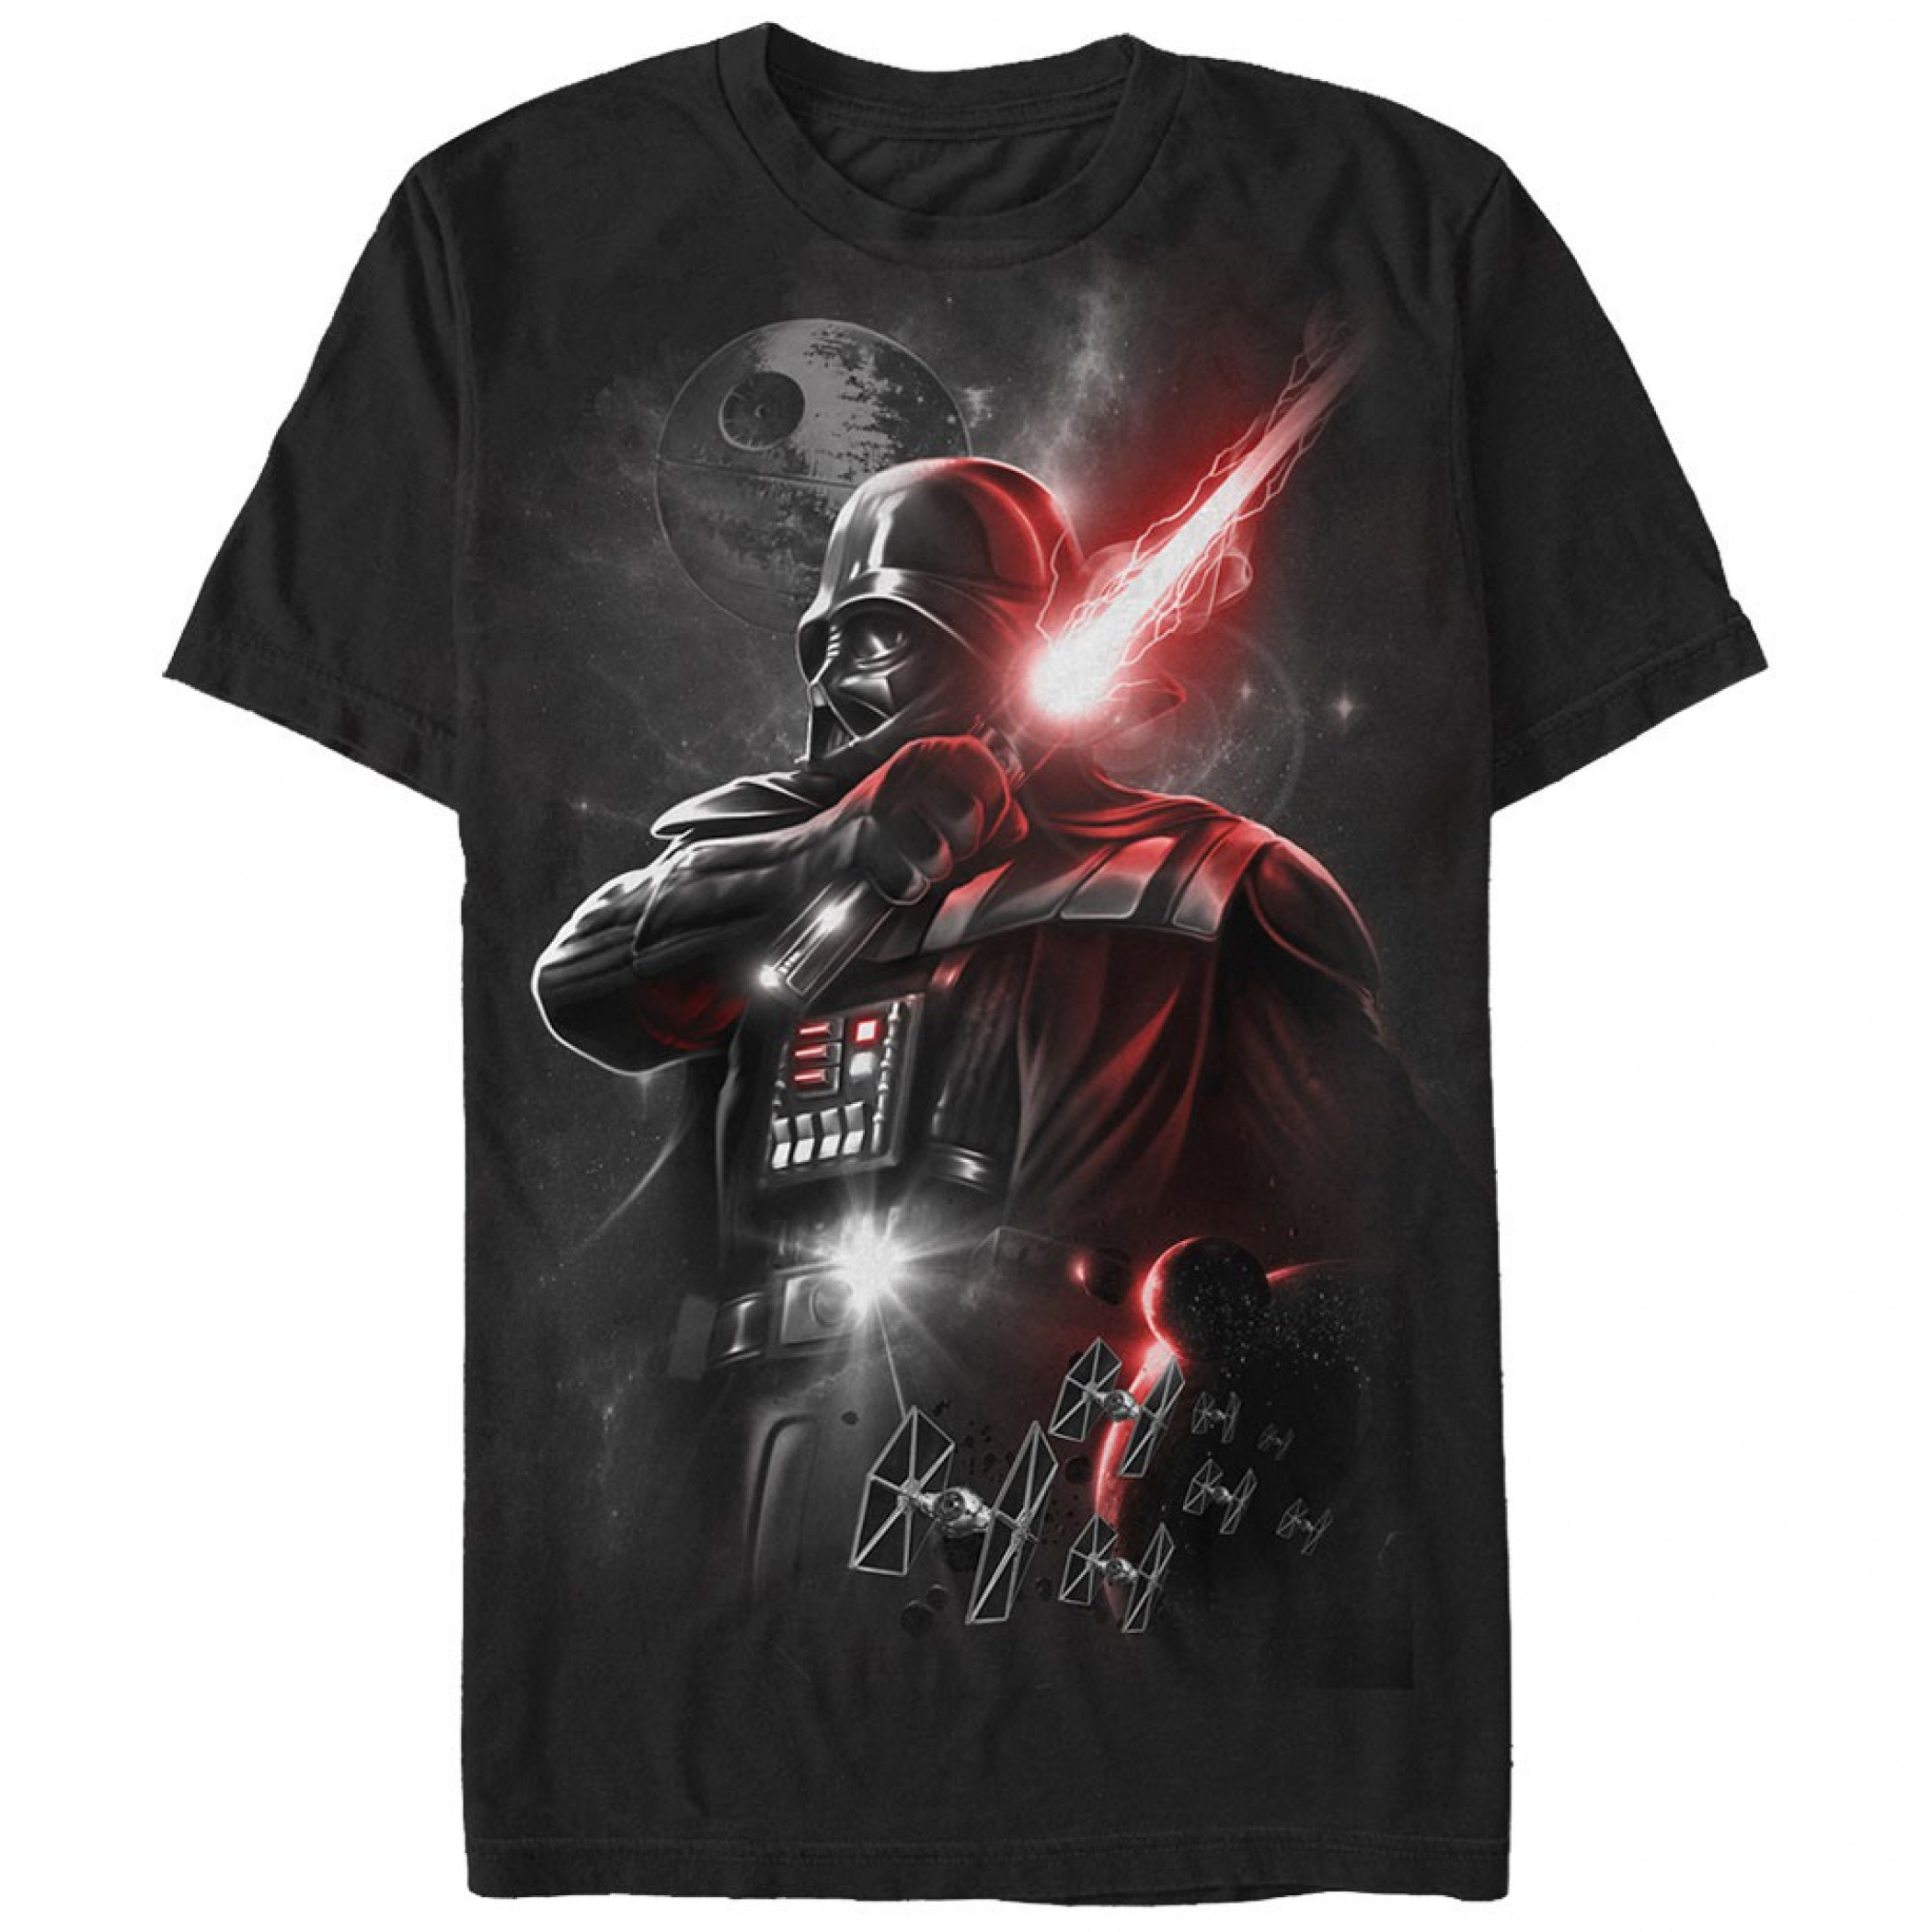 Star Wars Epic Darth Vader Black Men's T-Shirt